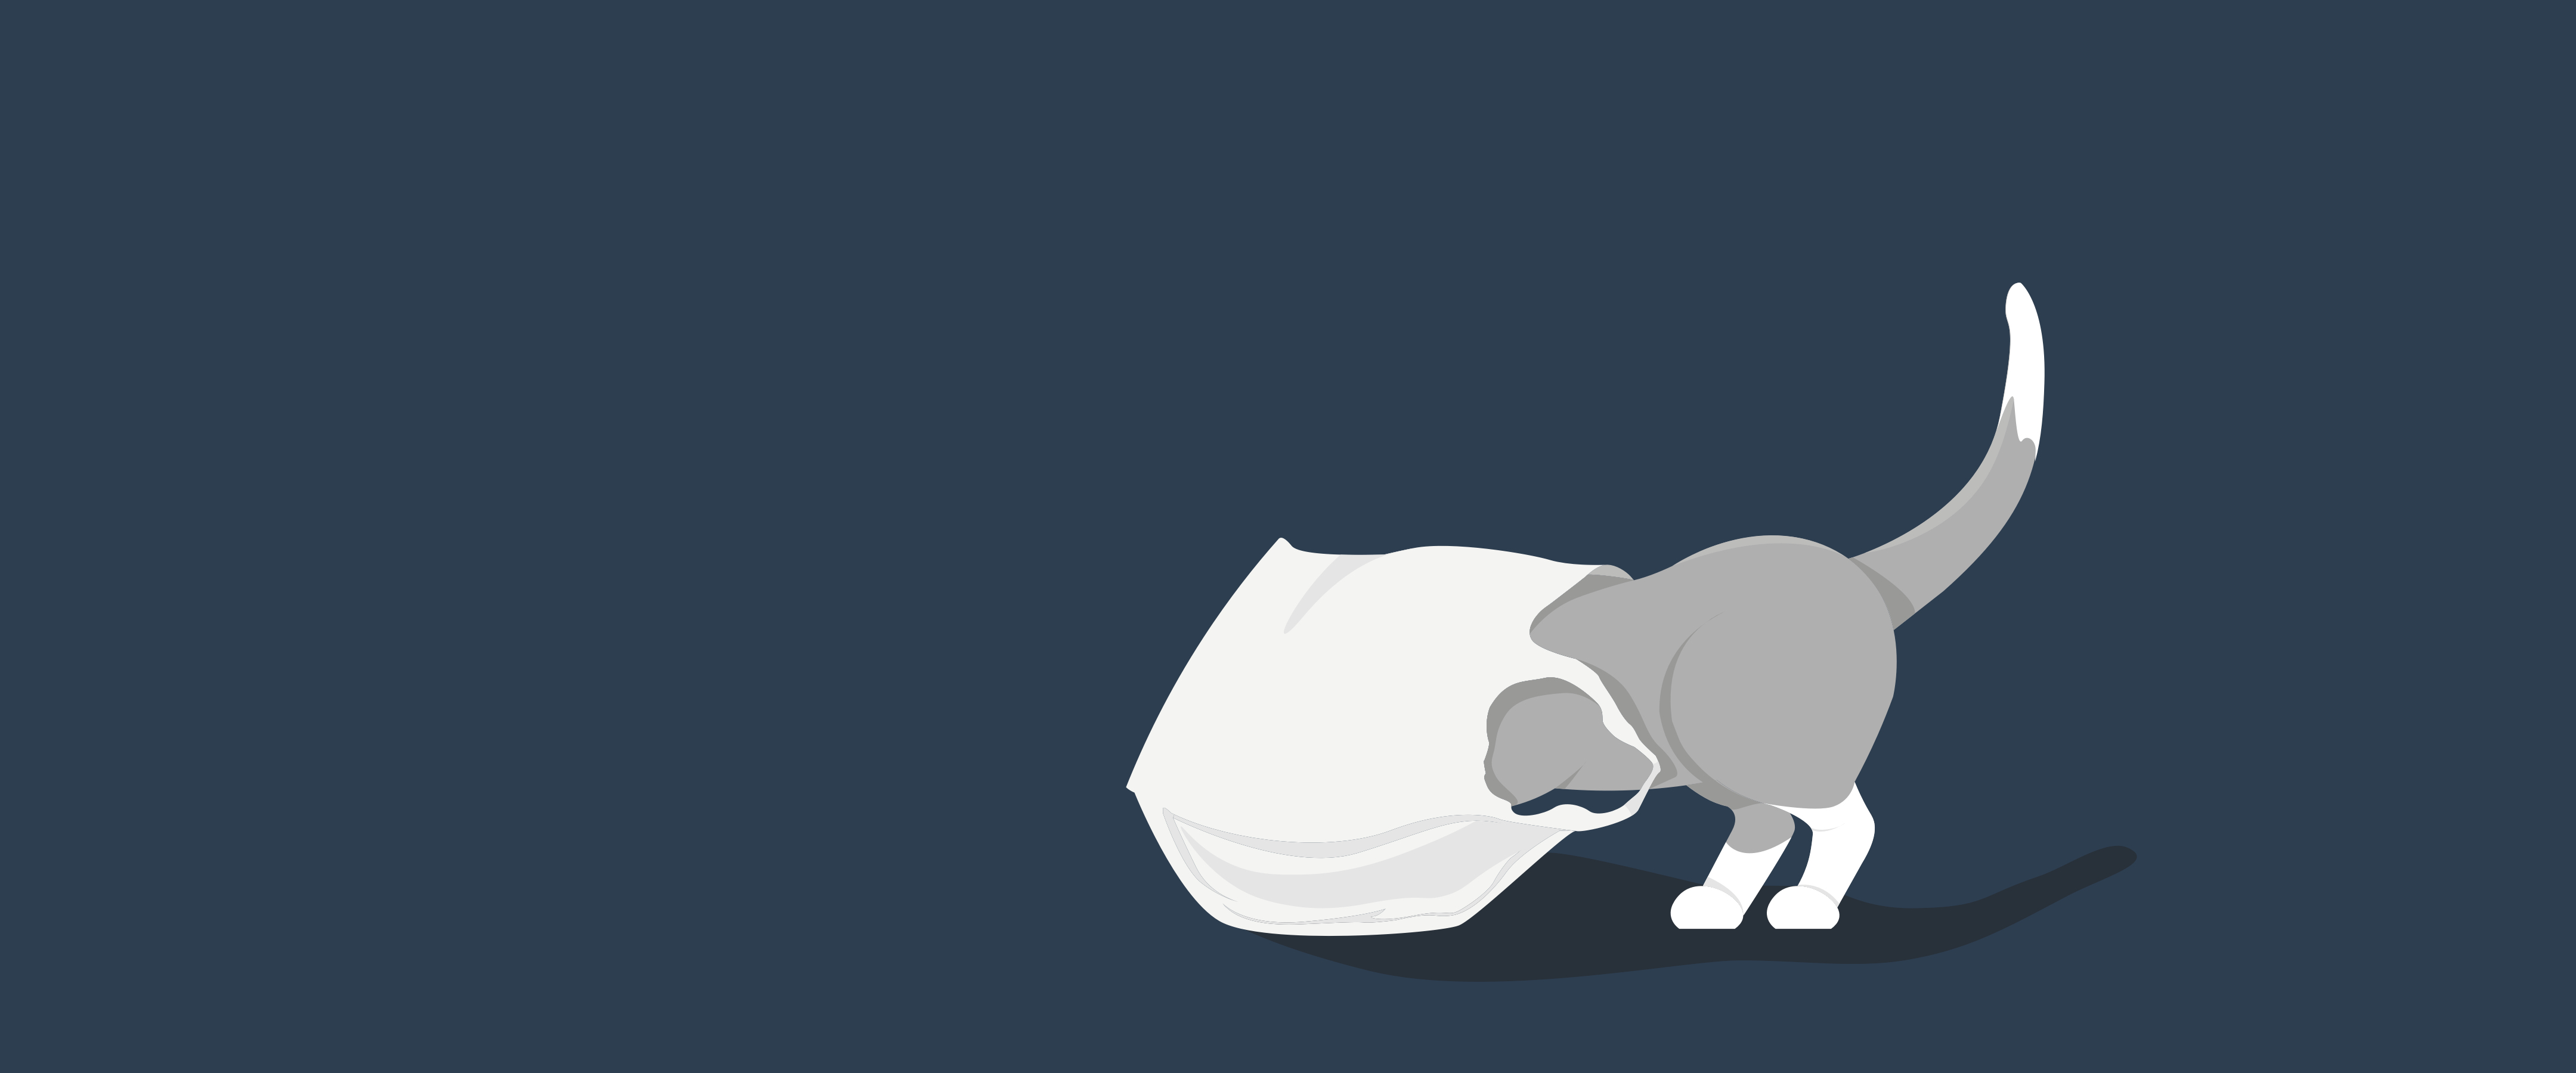 404 - Katze sucht in Tüte